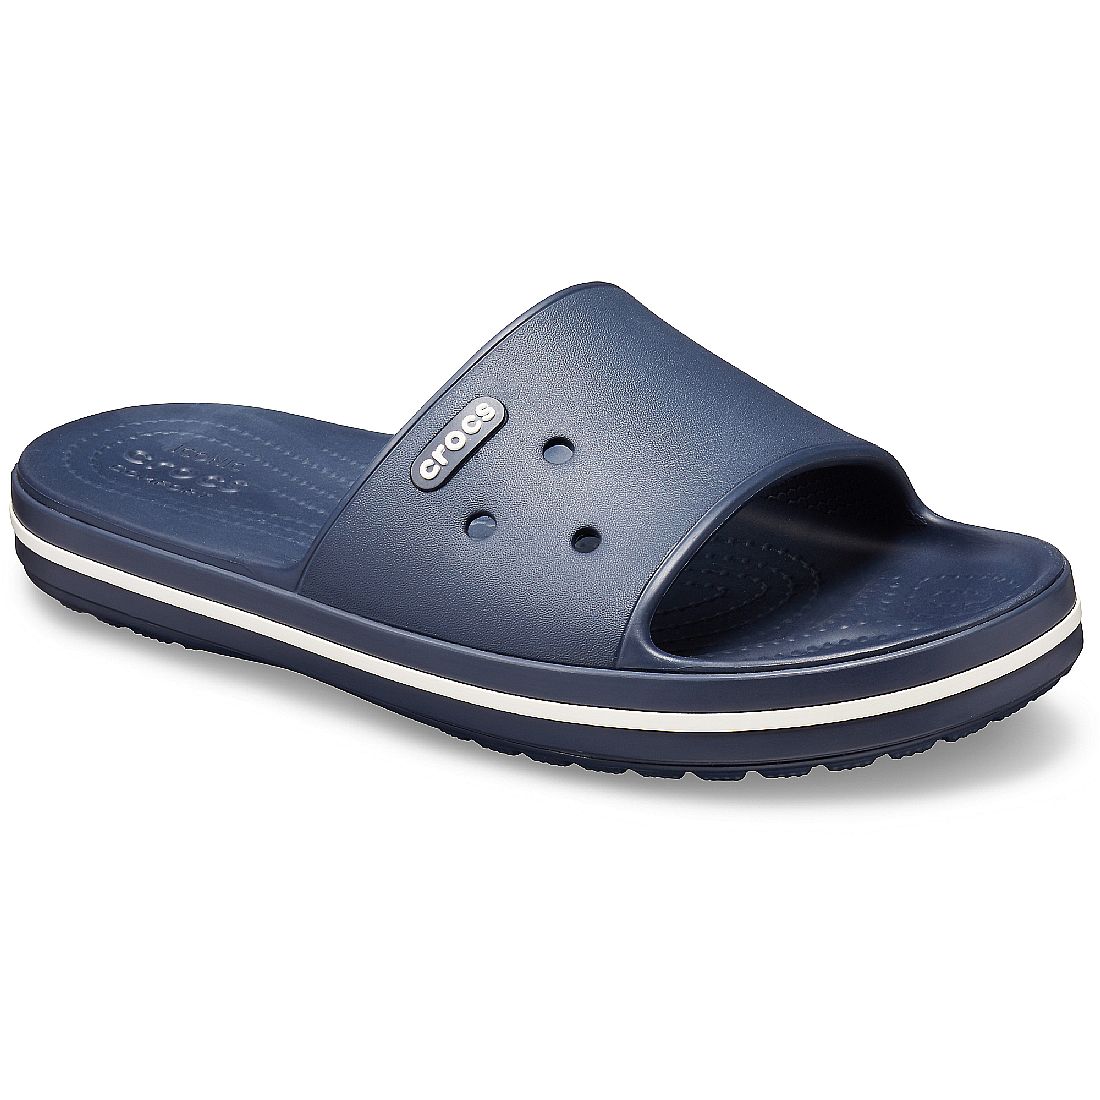 Crocs Crocband III Slide Unisex Sandale Badelatsche blau 205733